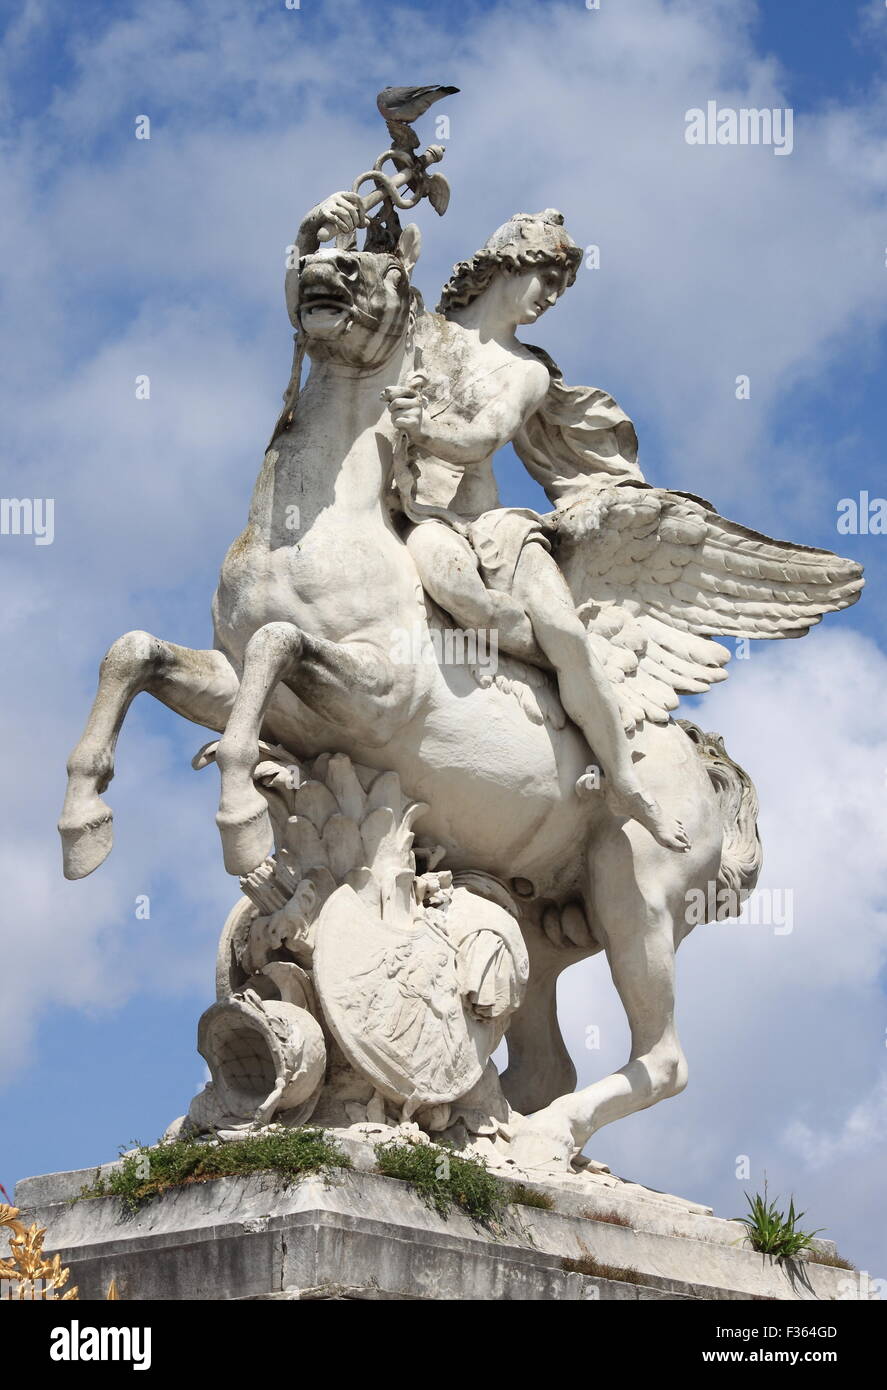 Statue of Mercury riding Pegasus in Tuileries Gardens of Paris, France Stock Photo